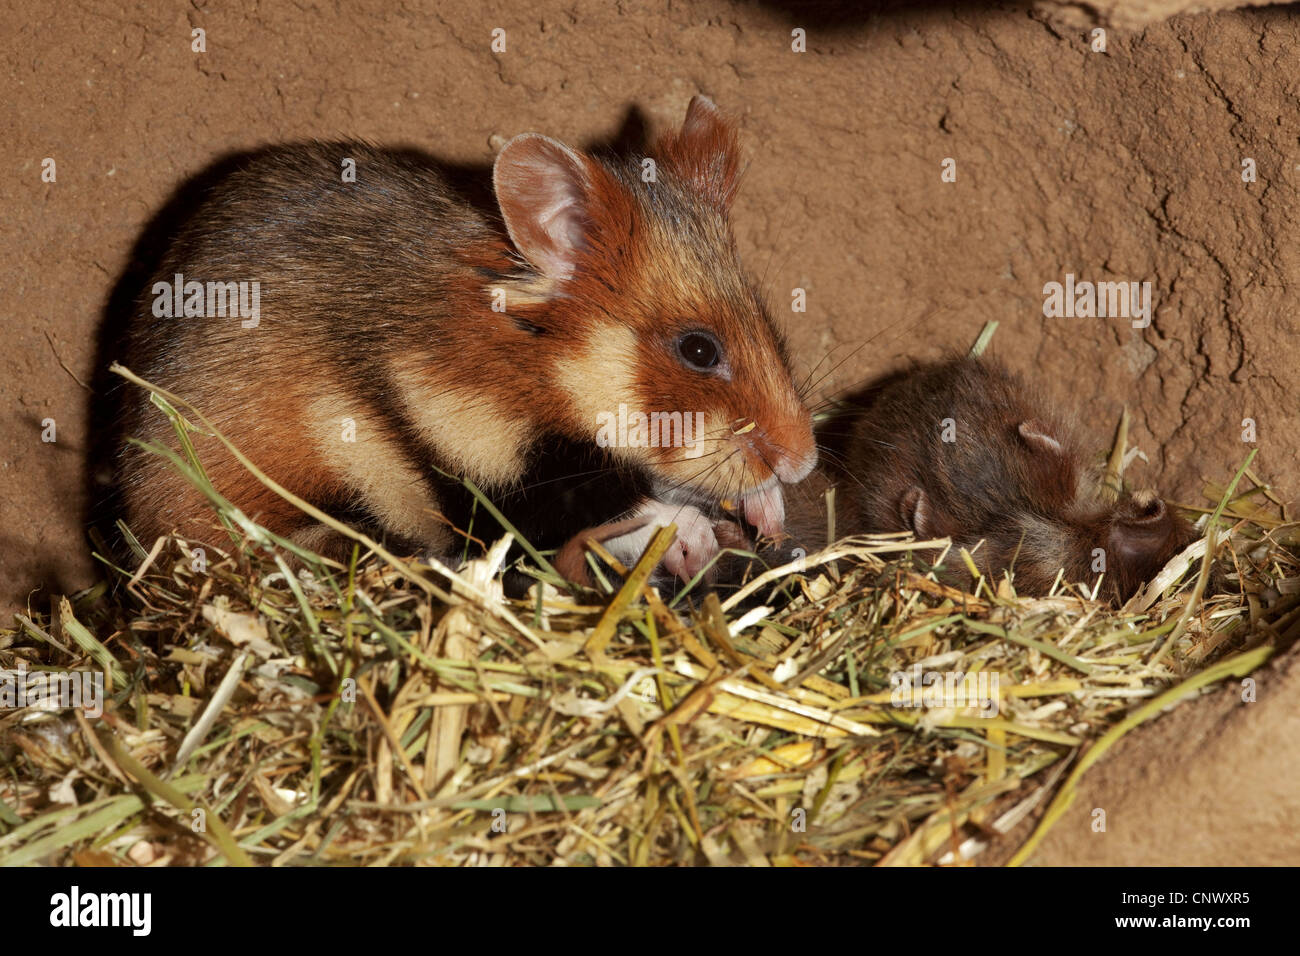 Hamster commun, black-bellied grand hamster (Cricetus cricetus), Femme avec jeune animal dans un subterraneous den Banque D'Images